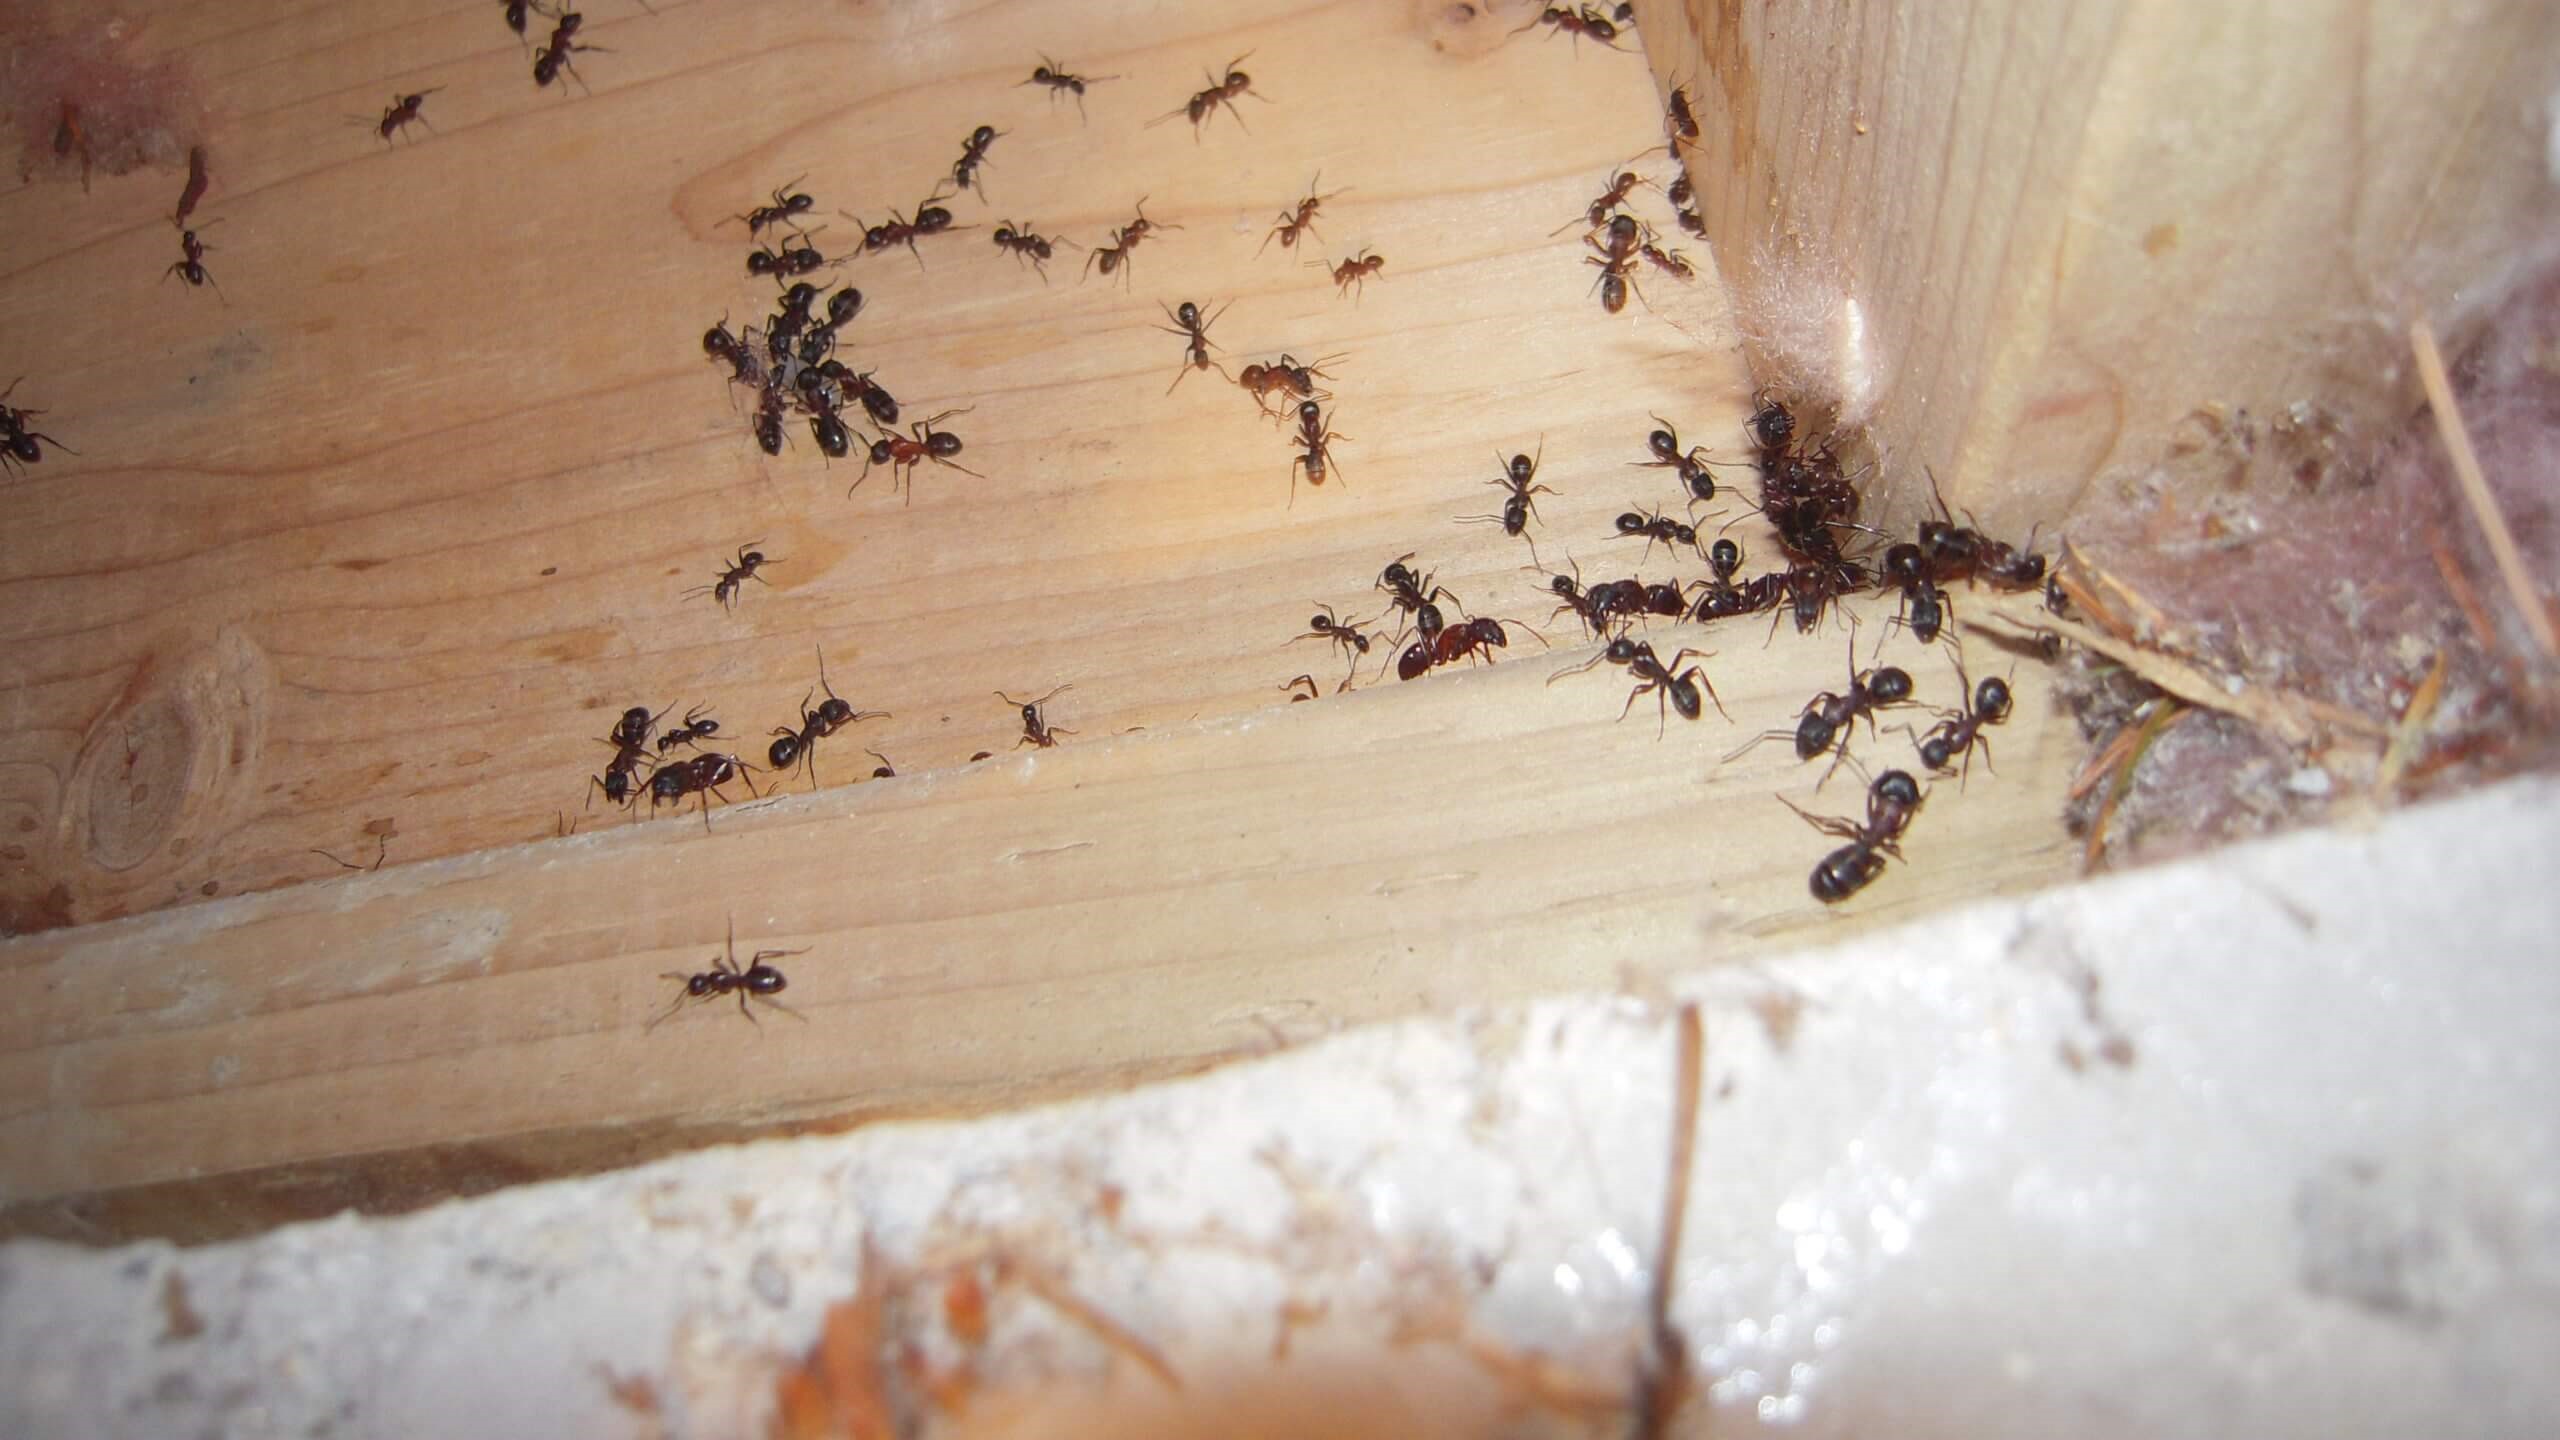 Ants Infestation